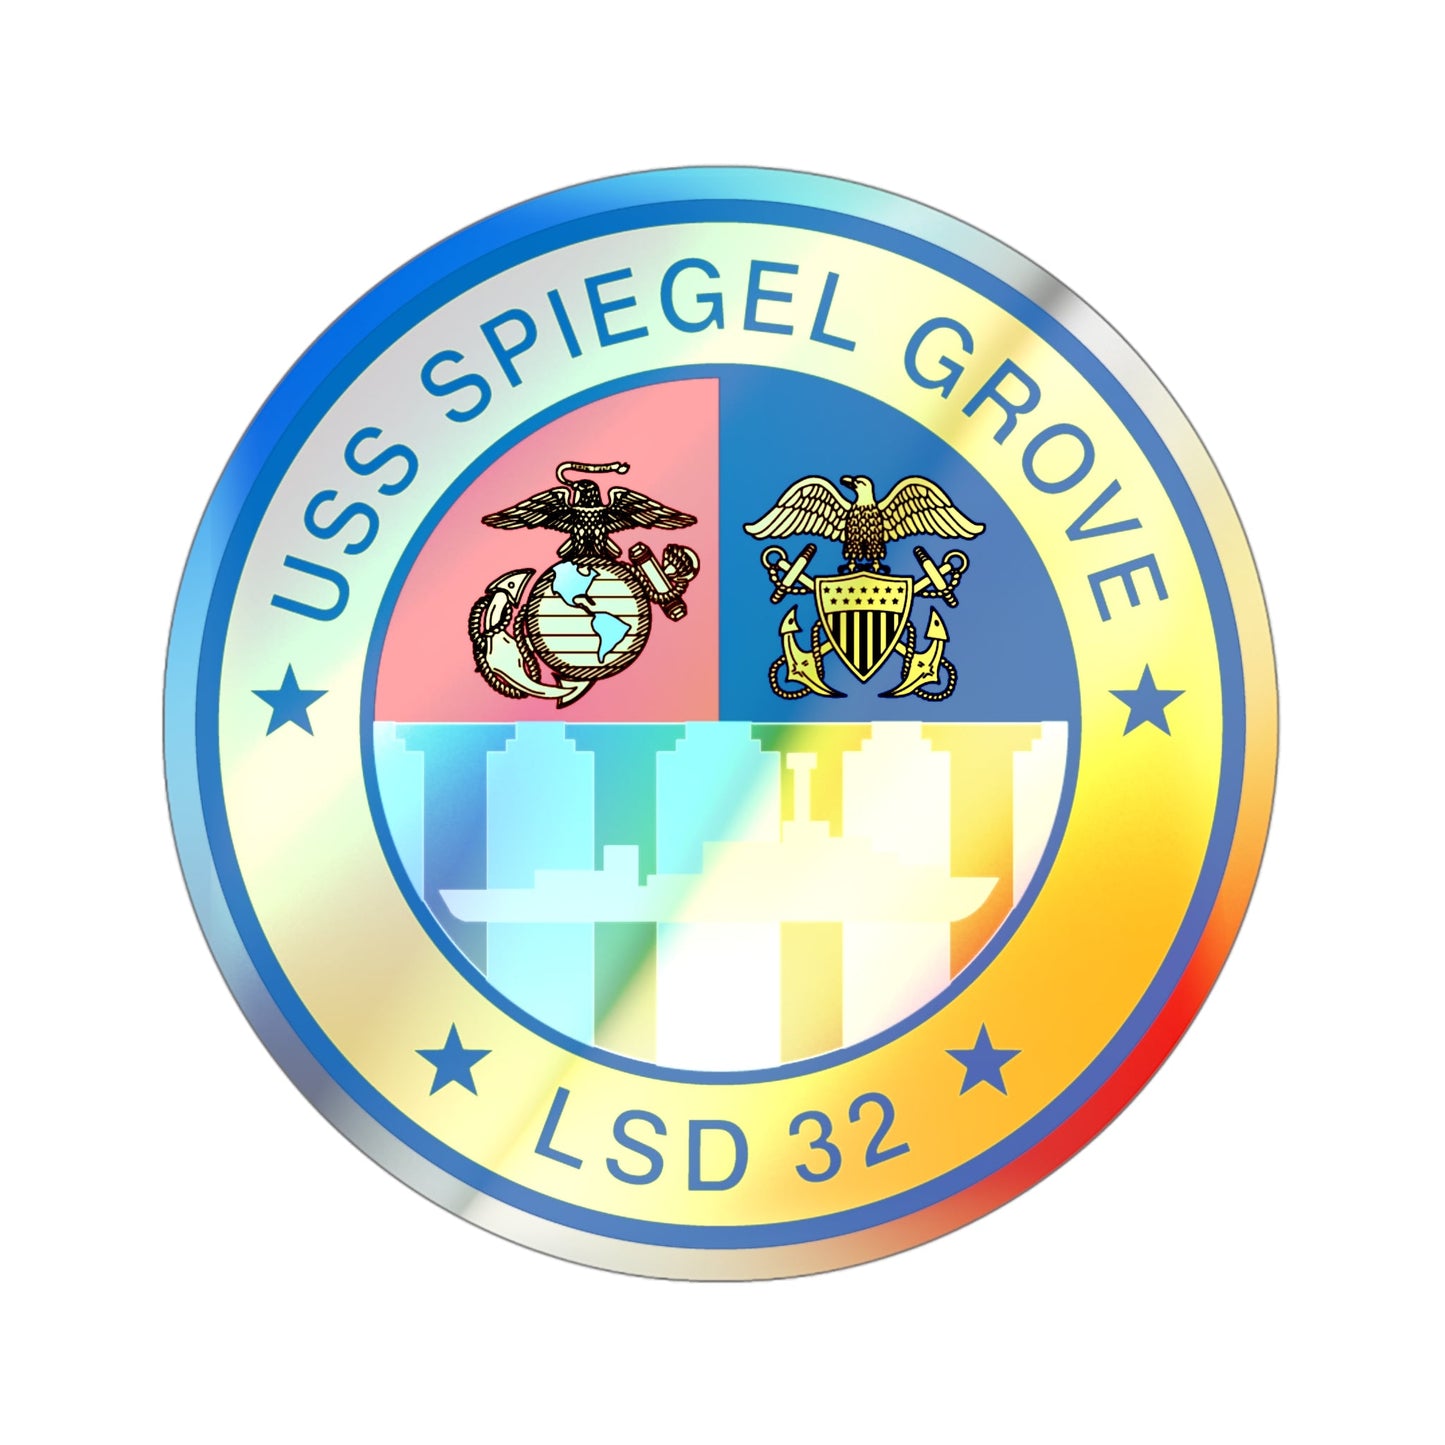 USS Spiegel Grove LSD 32 (U.S. Navy) Holographic STICKER Die-Cut Vinyl Decal-4 Inch-The Sticker Space